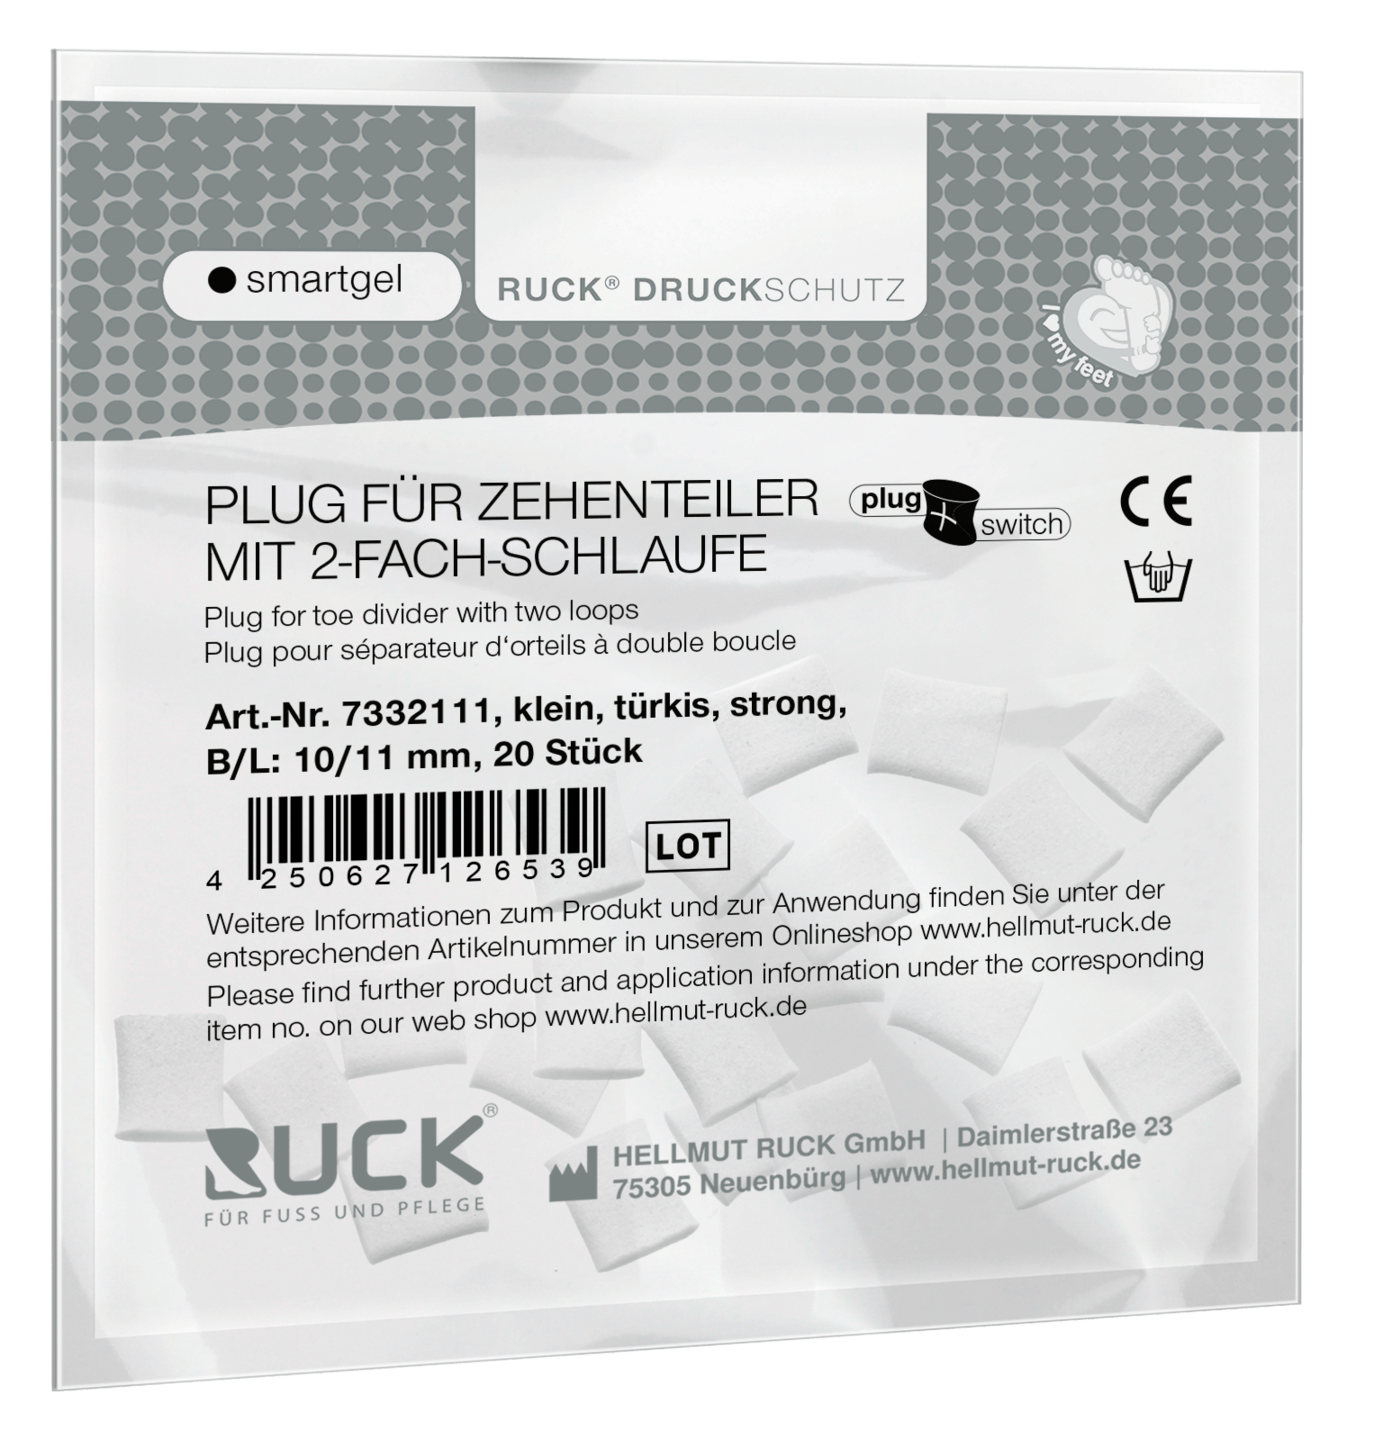 RUCK DRUCKSCHUTZ - Plugs für RUCK® DRUCKSCHUTZ smartgel plug+switch Zehenteiler mit 2-fach Schlaufe in türkis